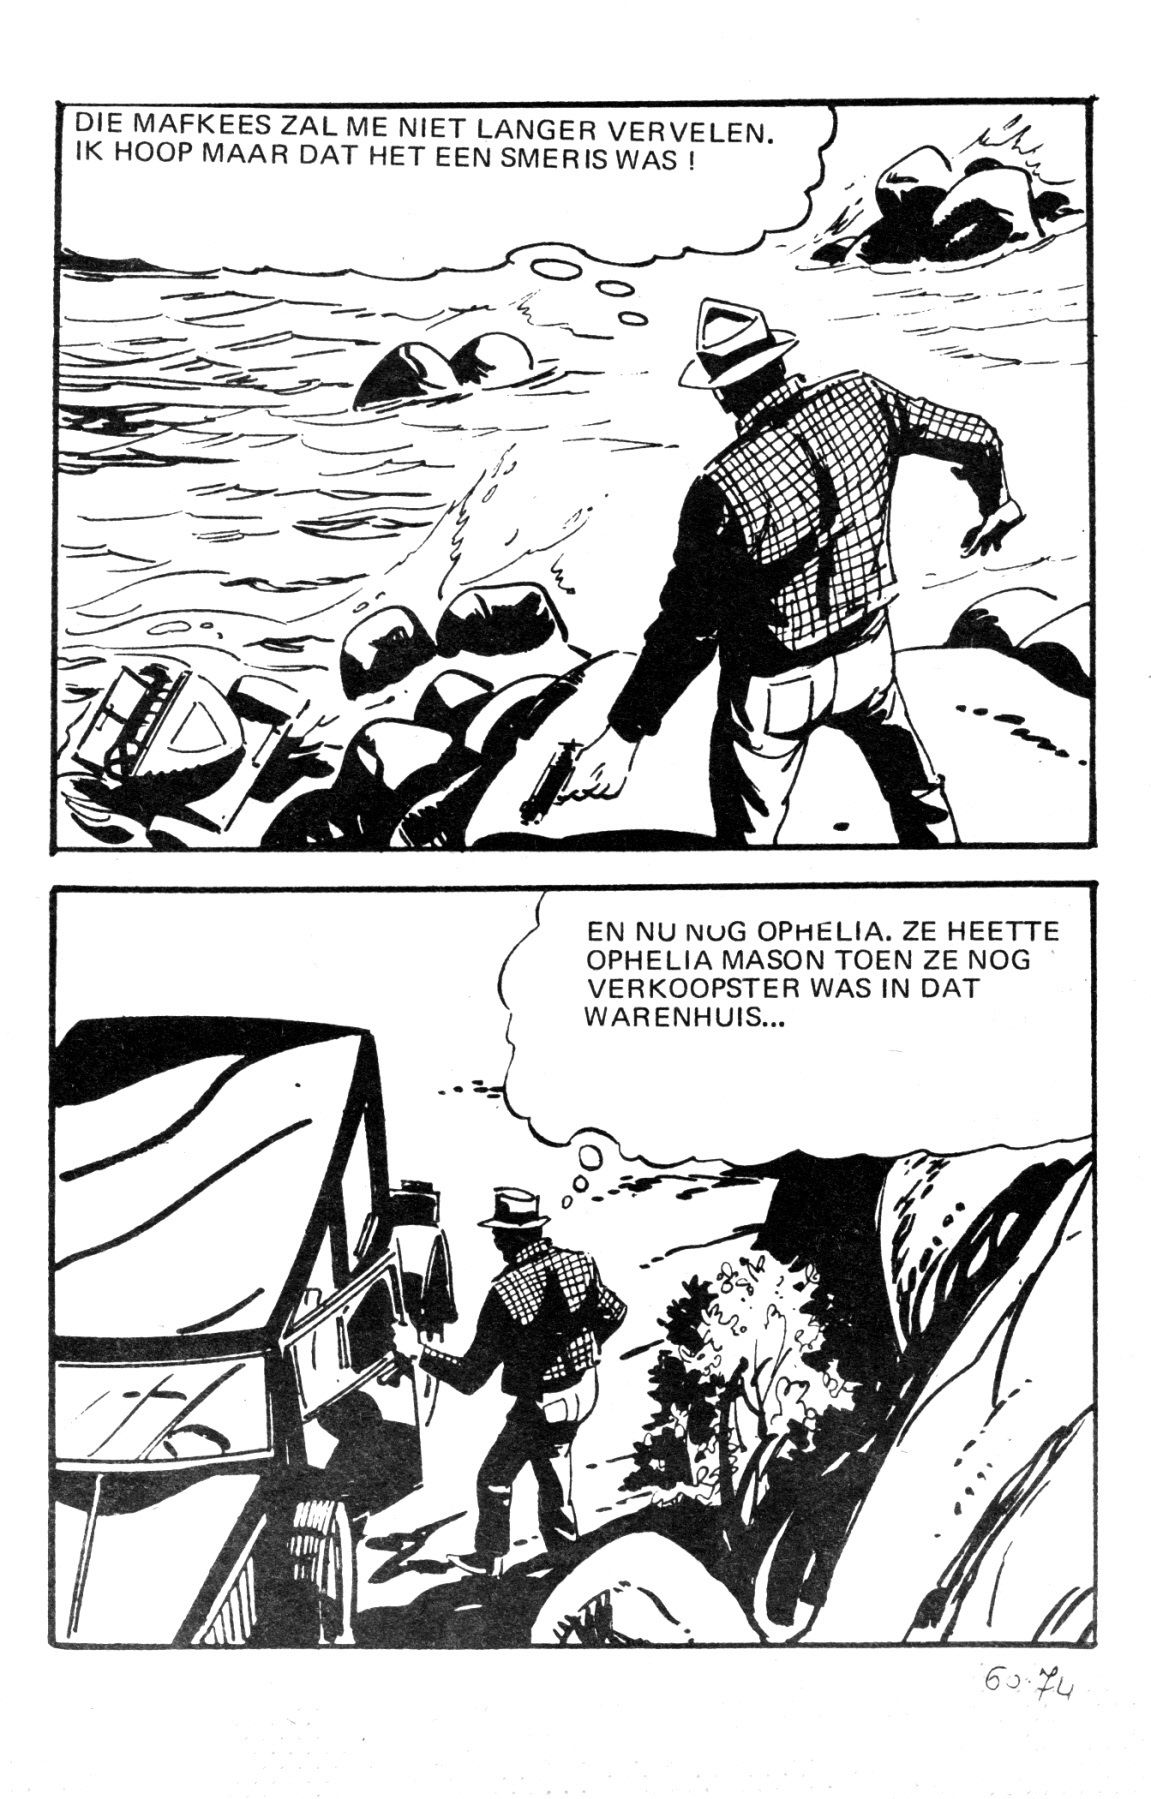 Wallestein Het Monster - 051 - Het Derde Slachtoffer (Dutch) In 9 series...meer dan 90 strips uit de "Wallestein" serie! 77